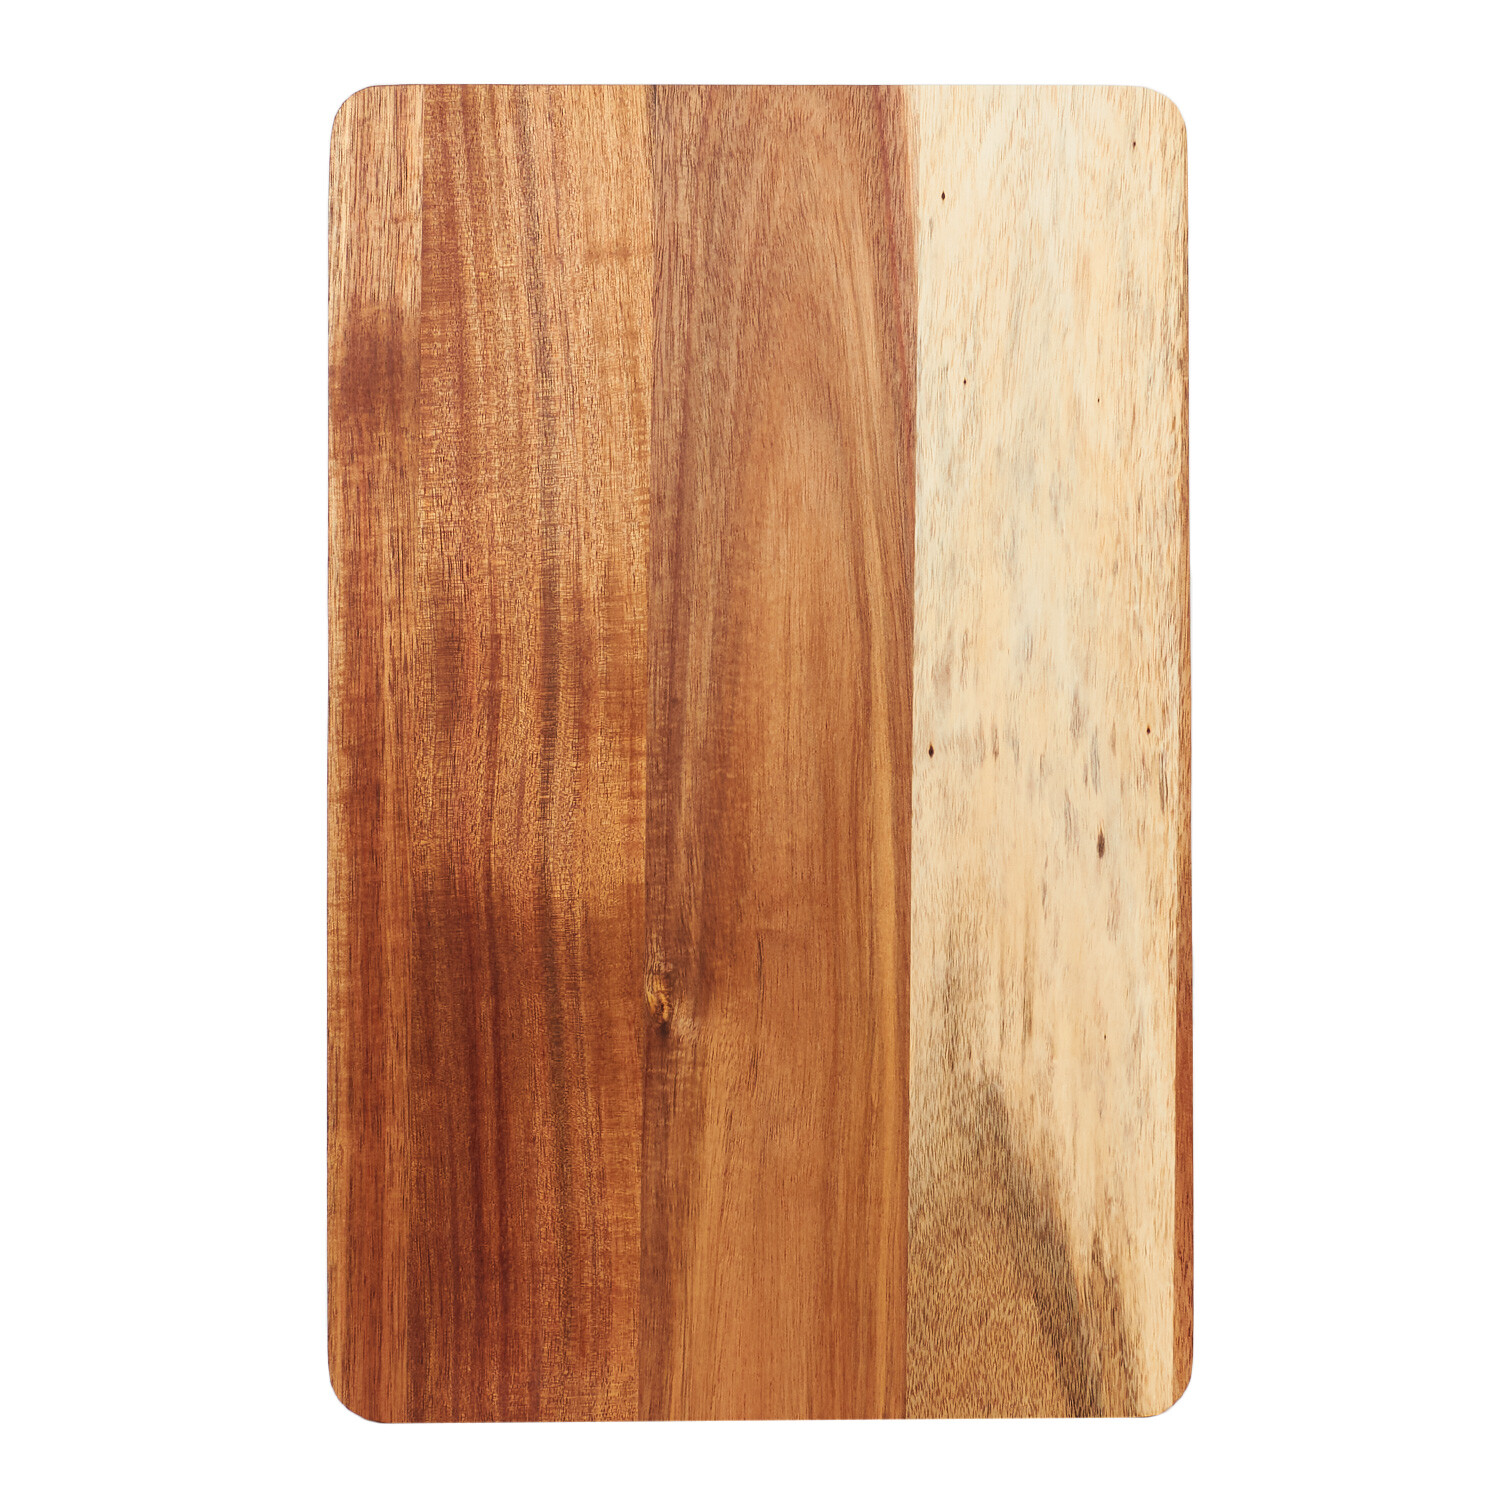 Acacia Traditional Chopping Board - Brown Image 4